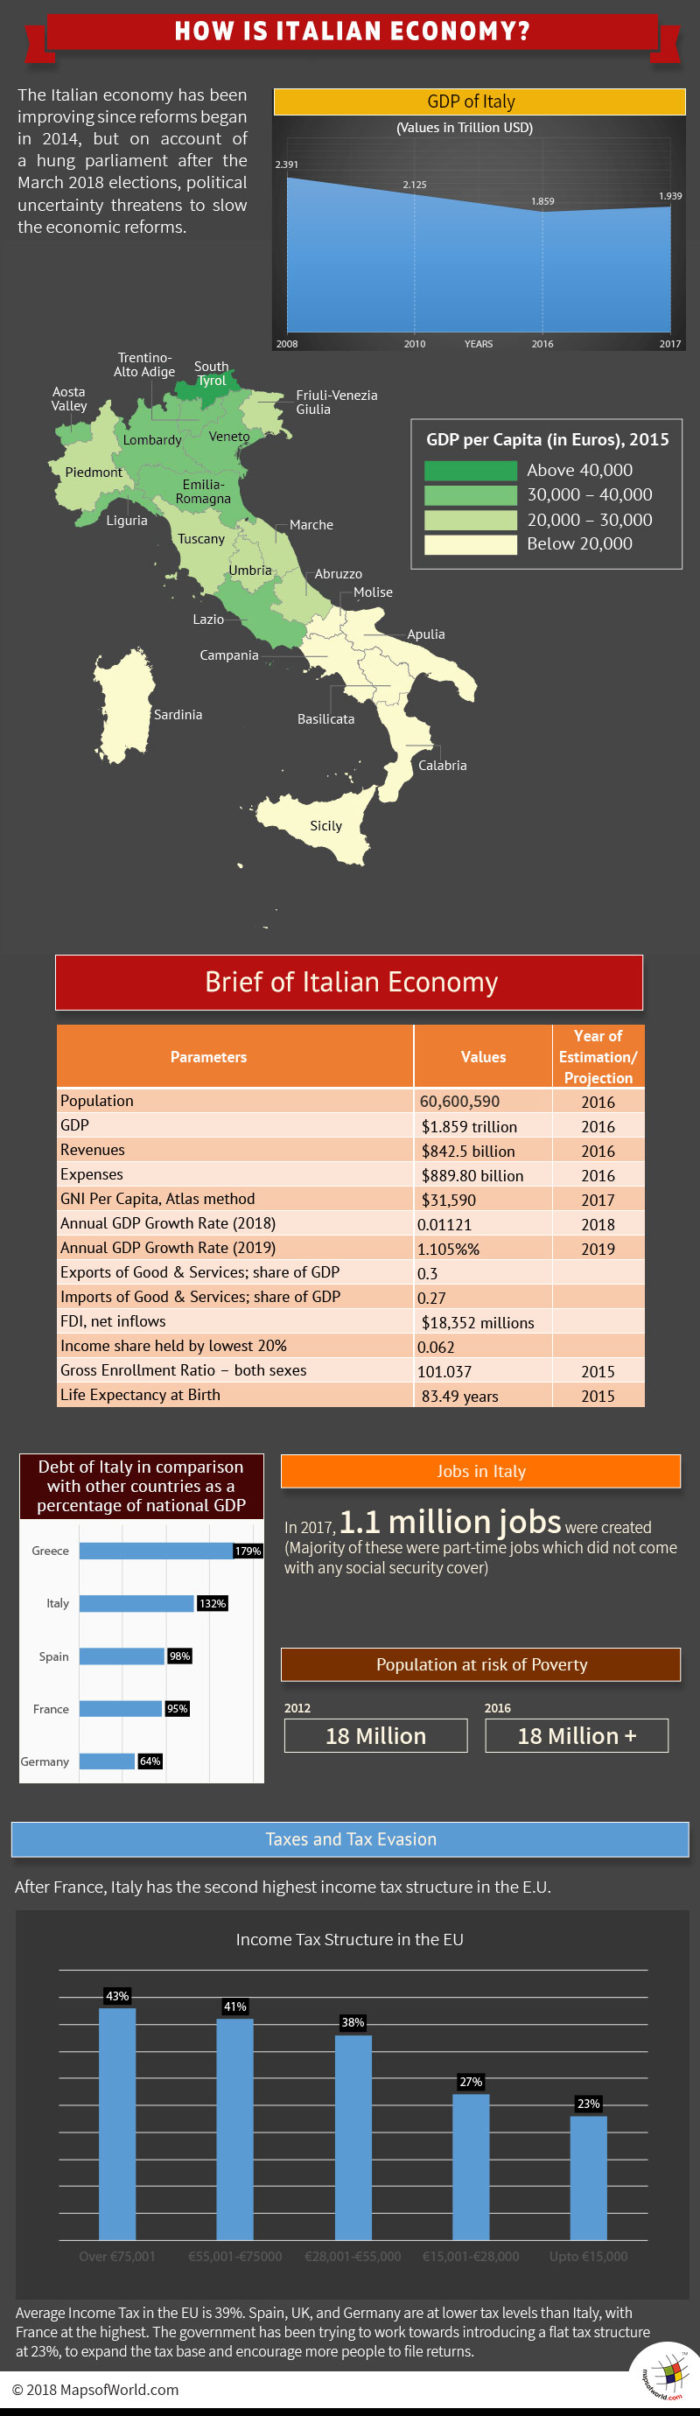 Infographic - Italian Economy